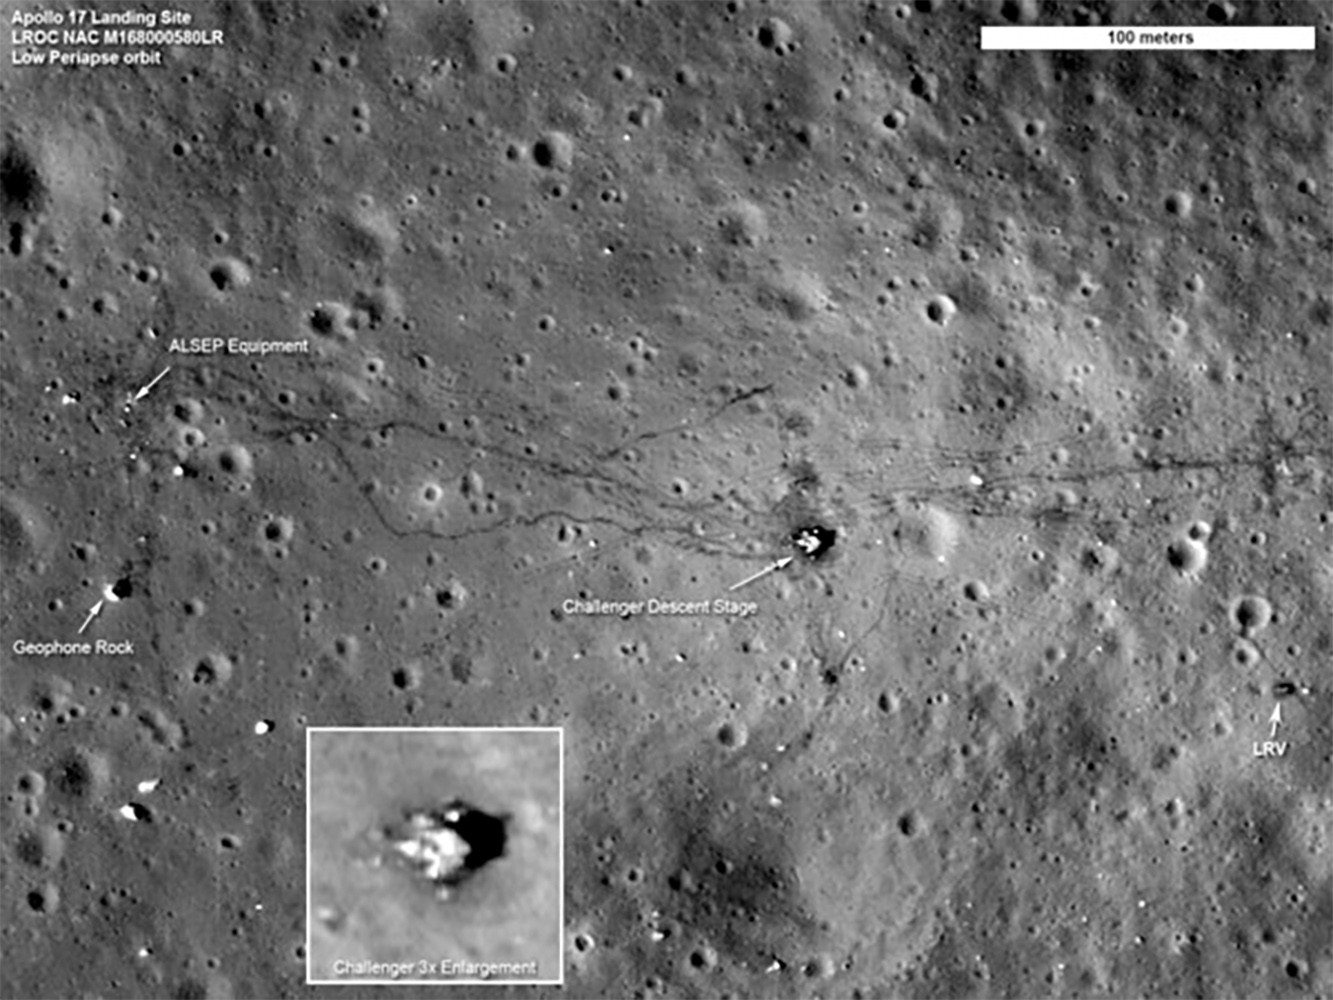 Foto de las huellas dejadas por los astronautas y el todoterreno del Apolo XVII, tomadas por la Lunar Reconnaissance Orbiter.